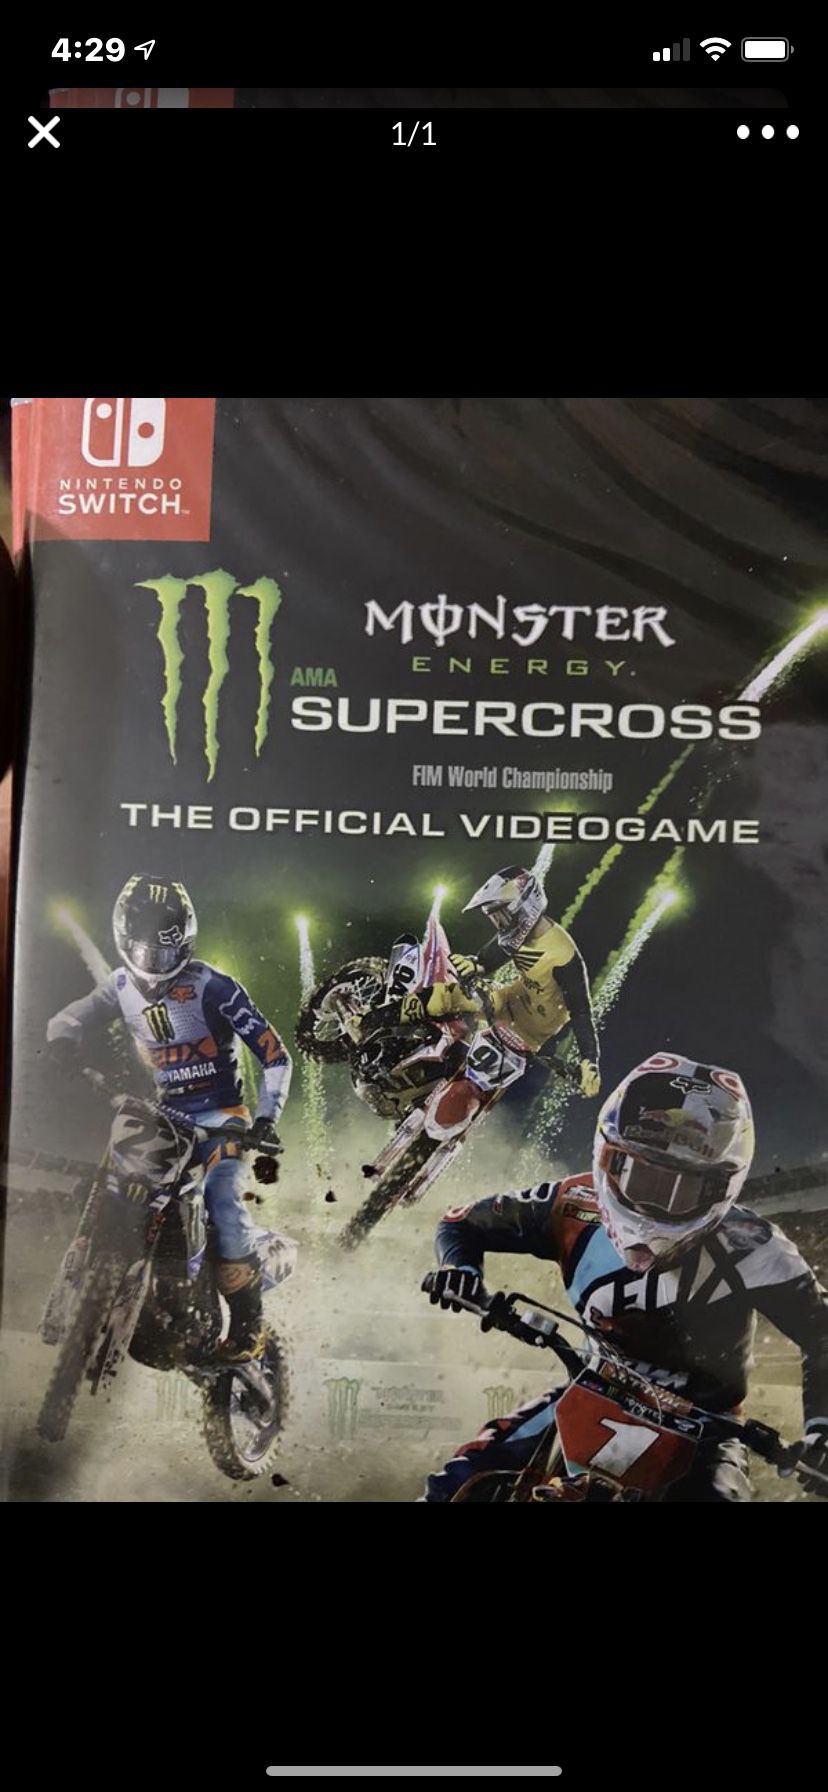 Nintendo switch monster energy super cross